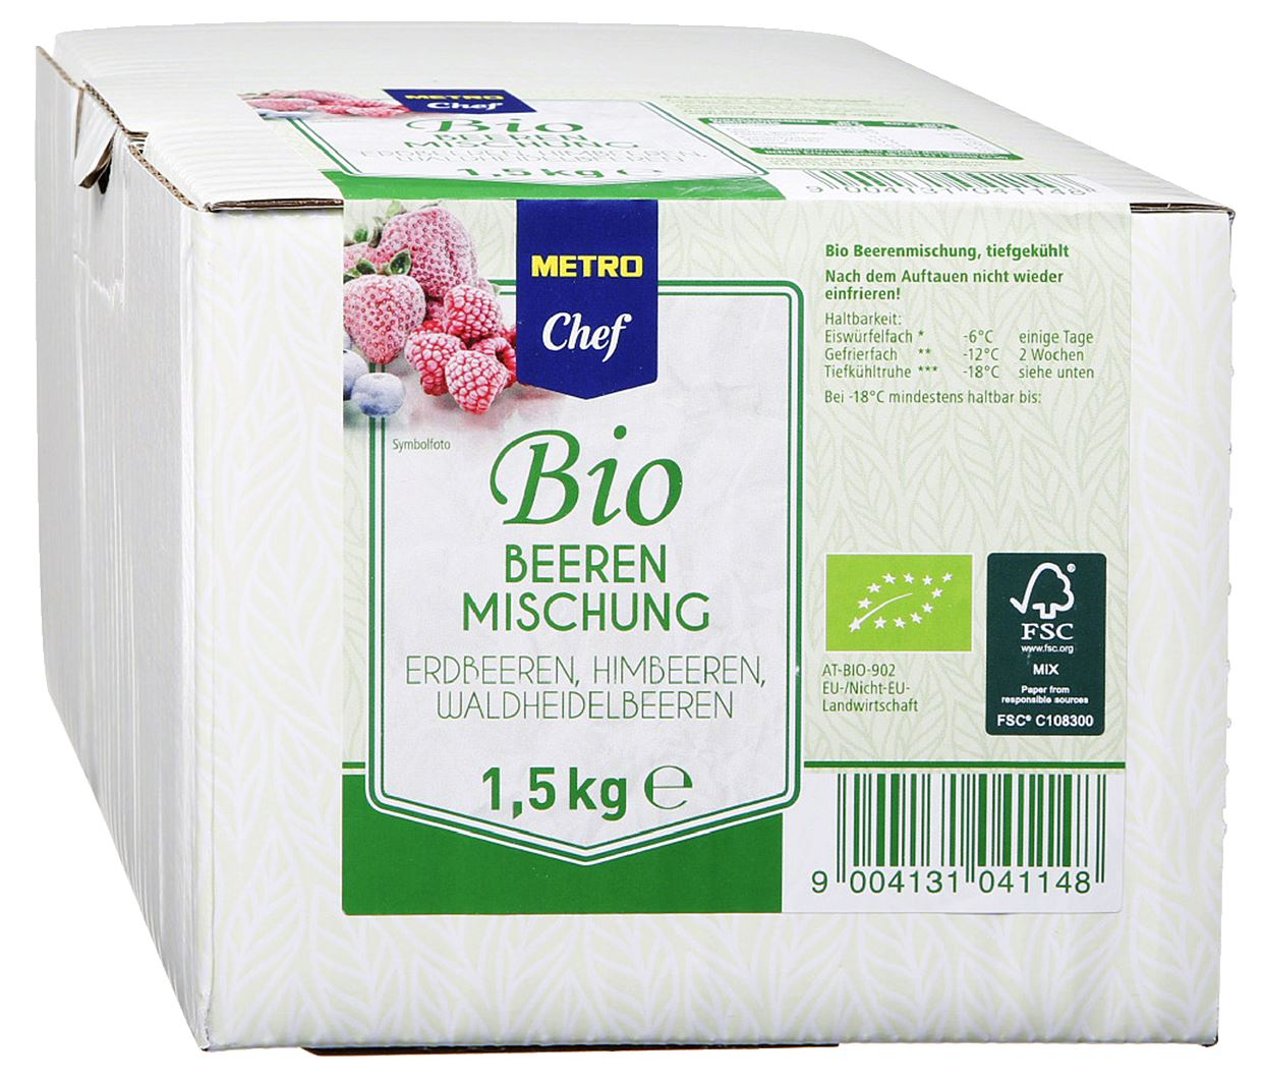 METRO Chef Bio - Beerenmischung tiefgefroren - 1,5 kg Packung